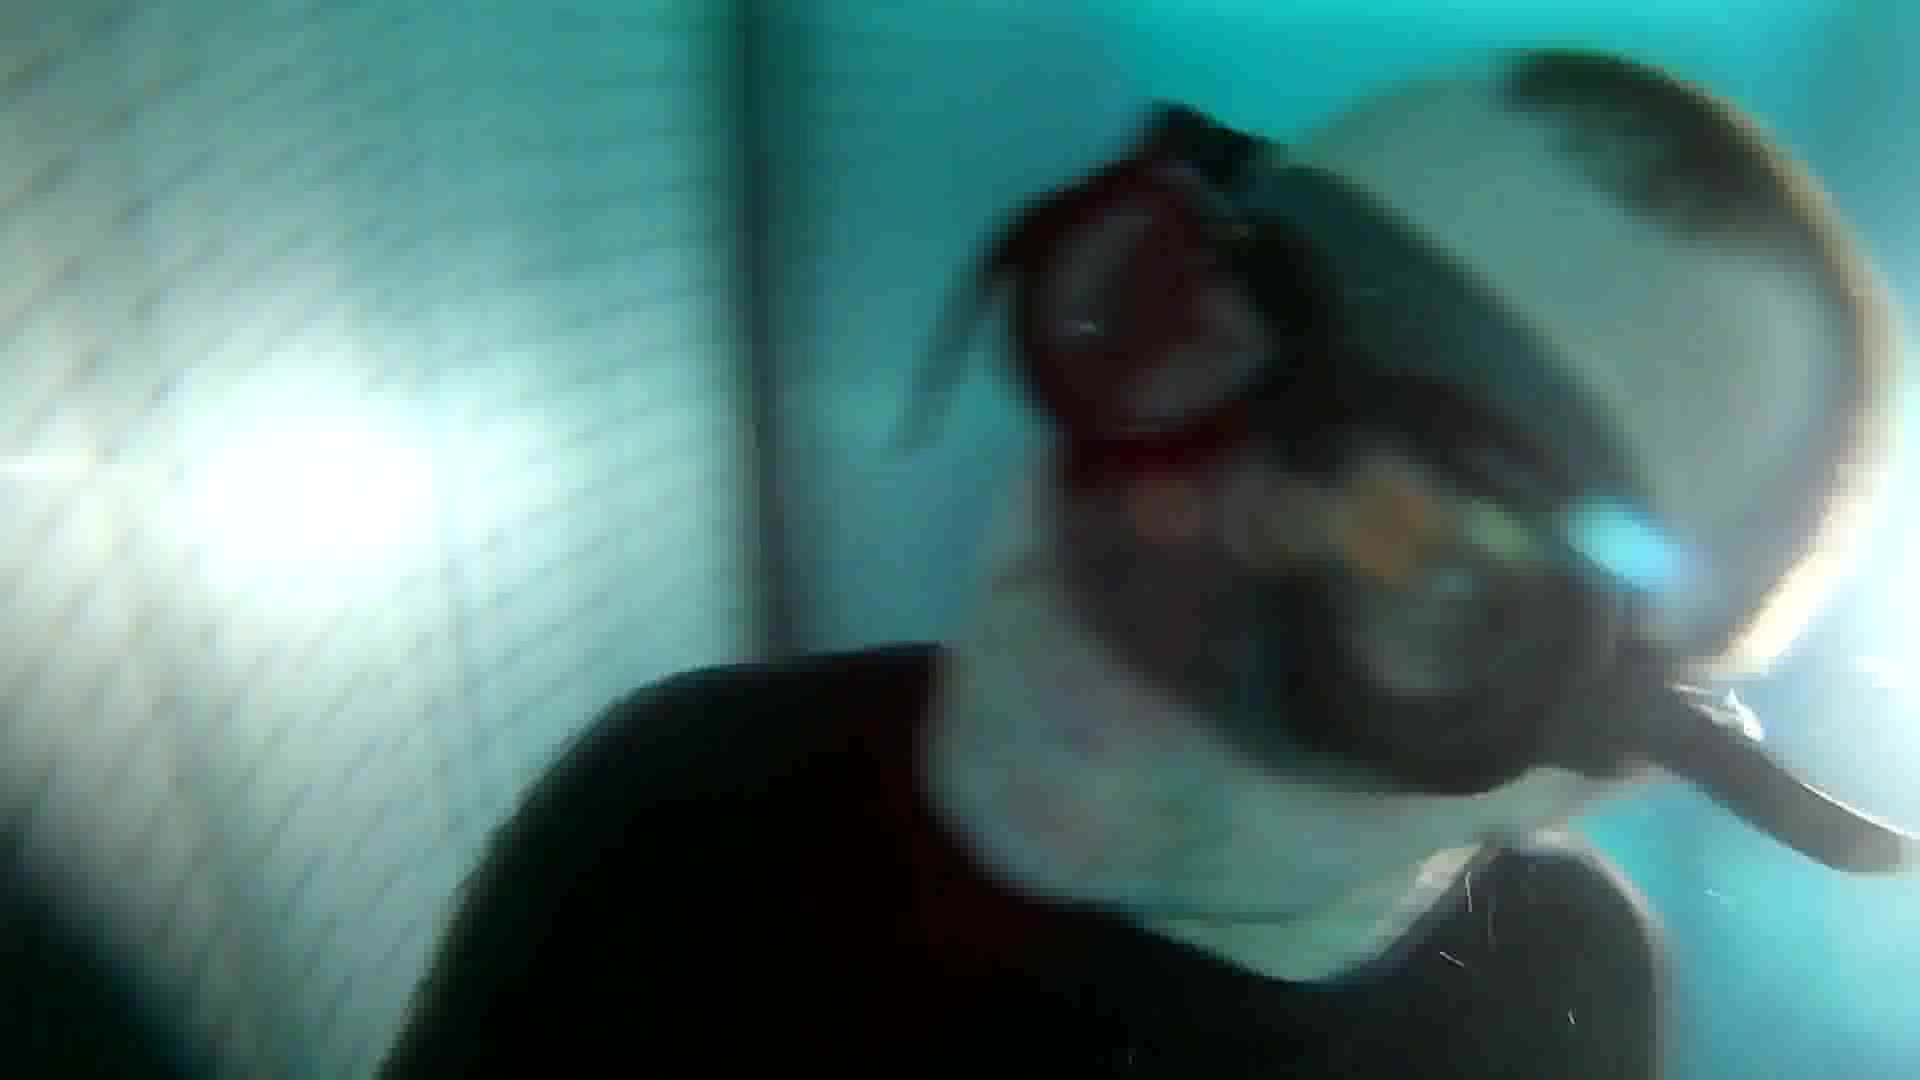 German freedivers breatholding underwater in pool - video 2